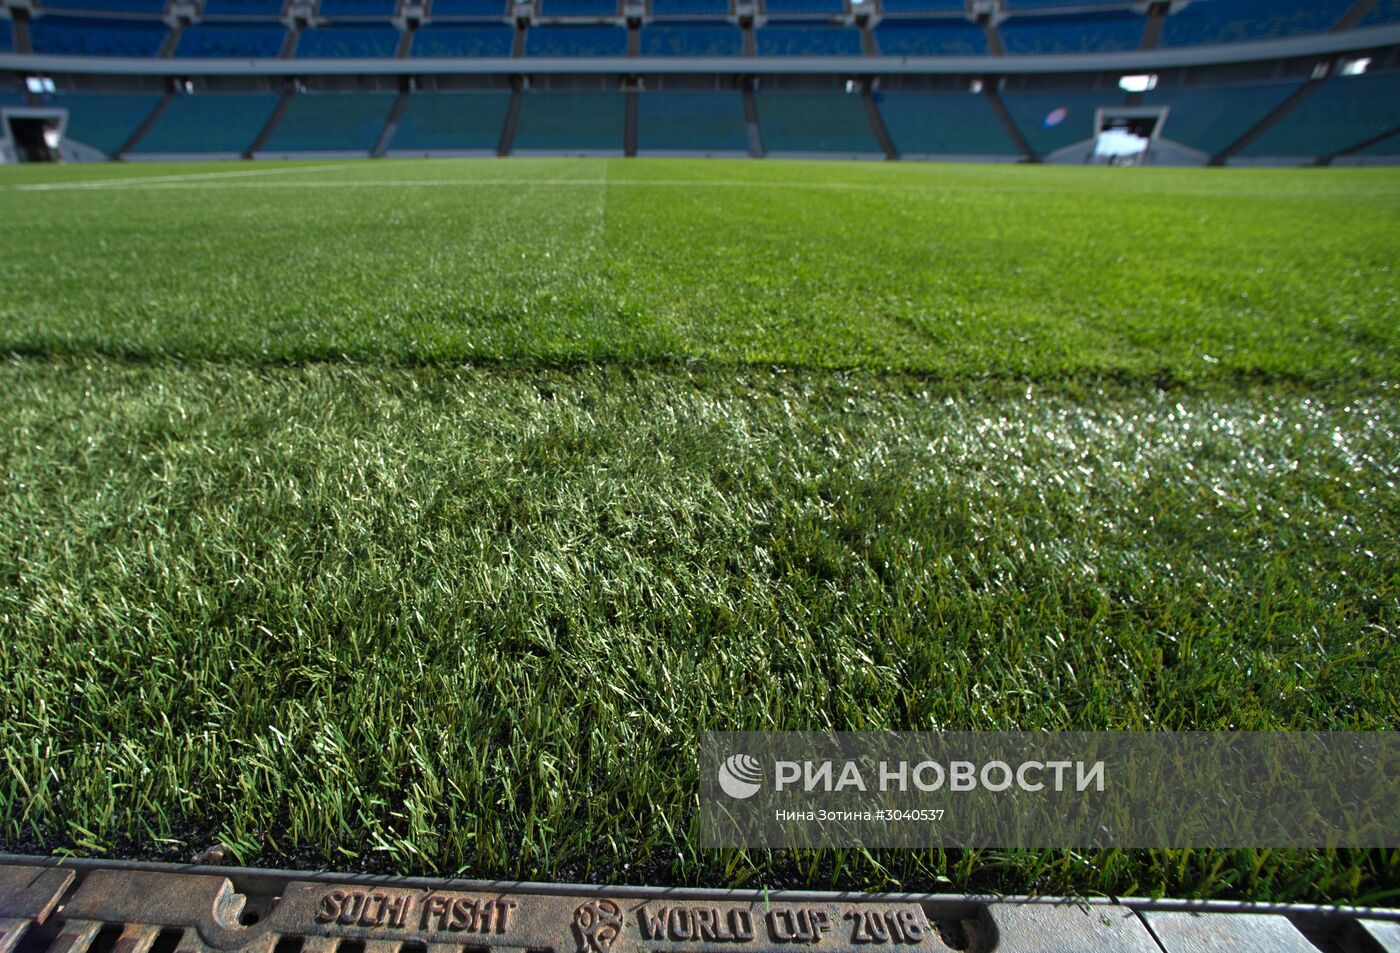 Визит комиссии ФИФА на стадион "Фишт"